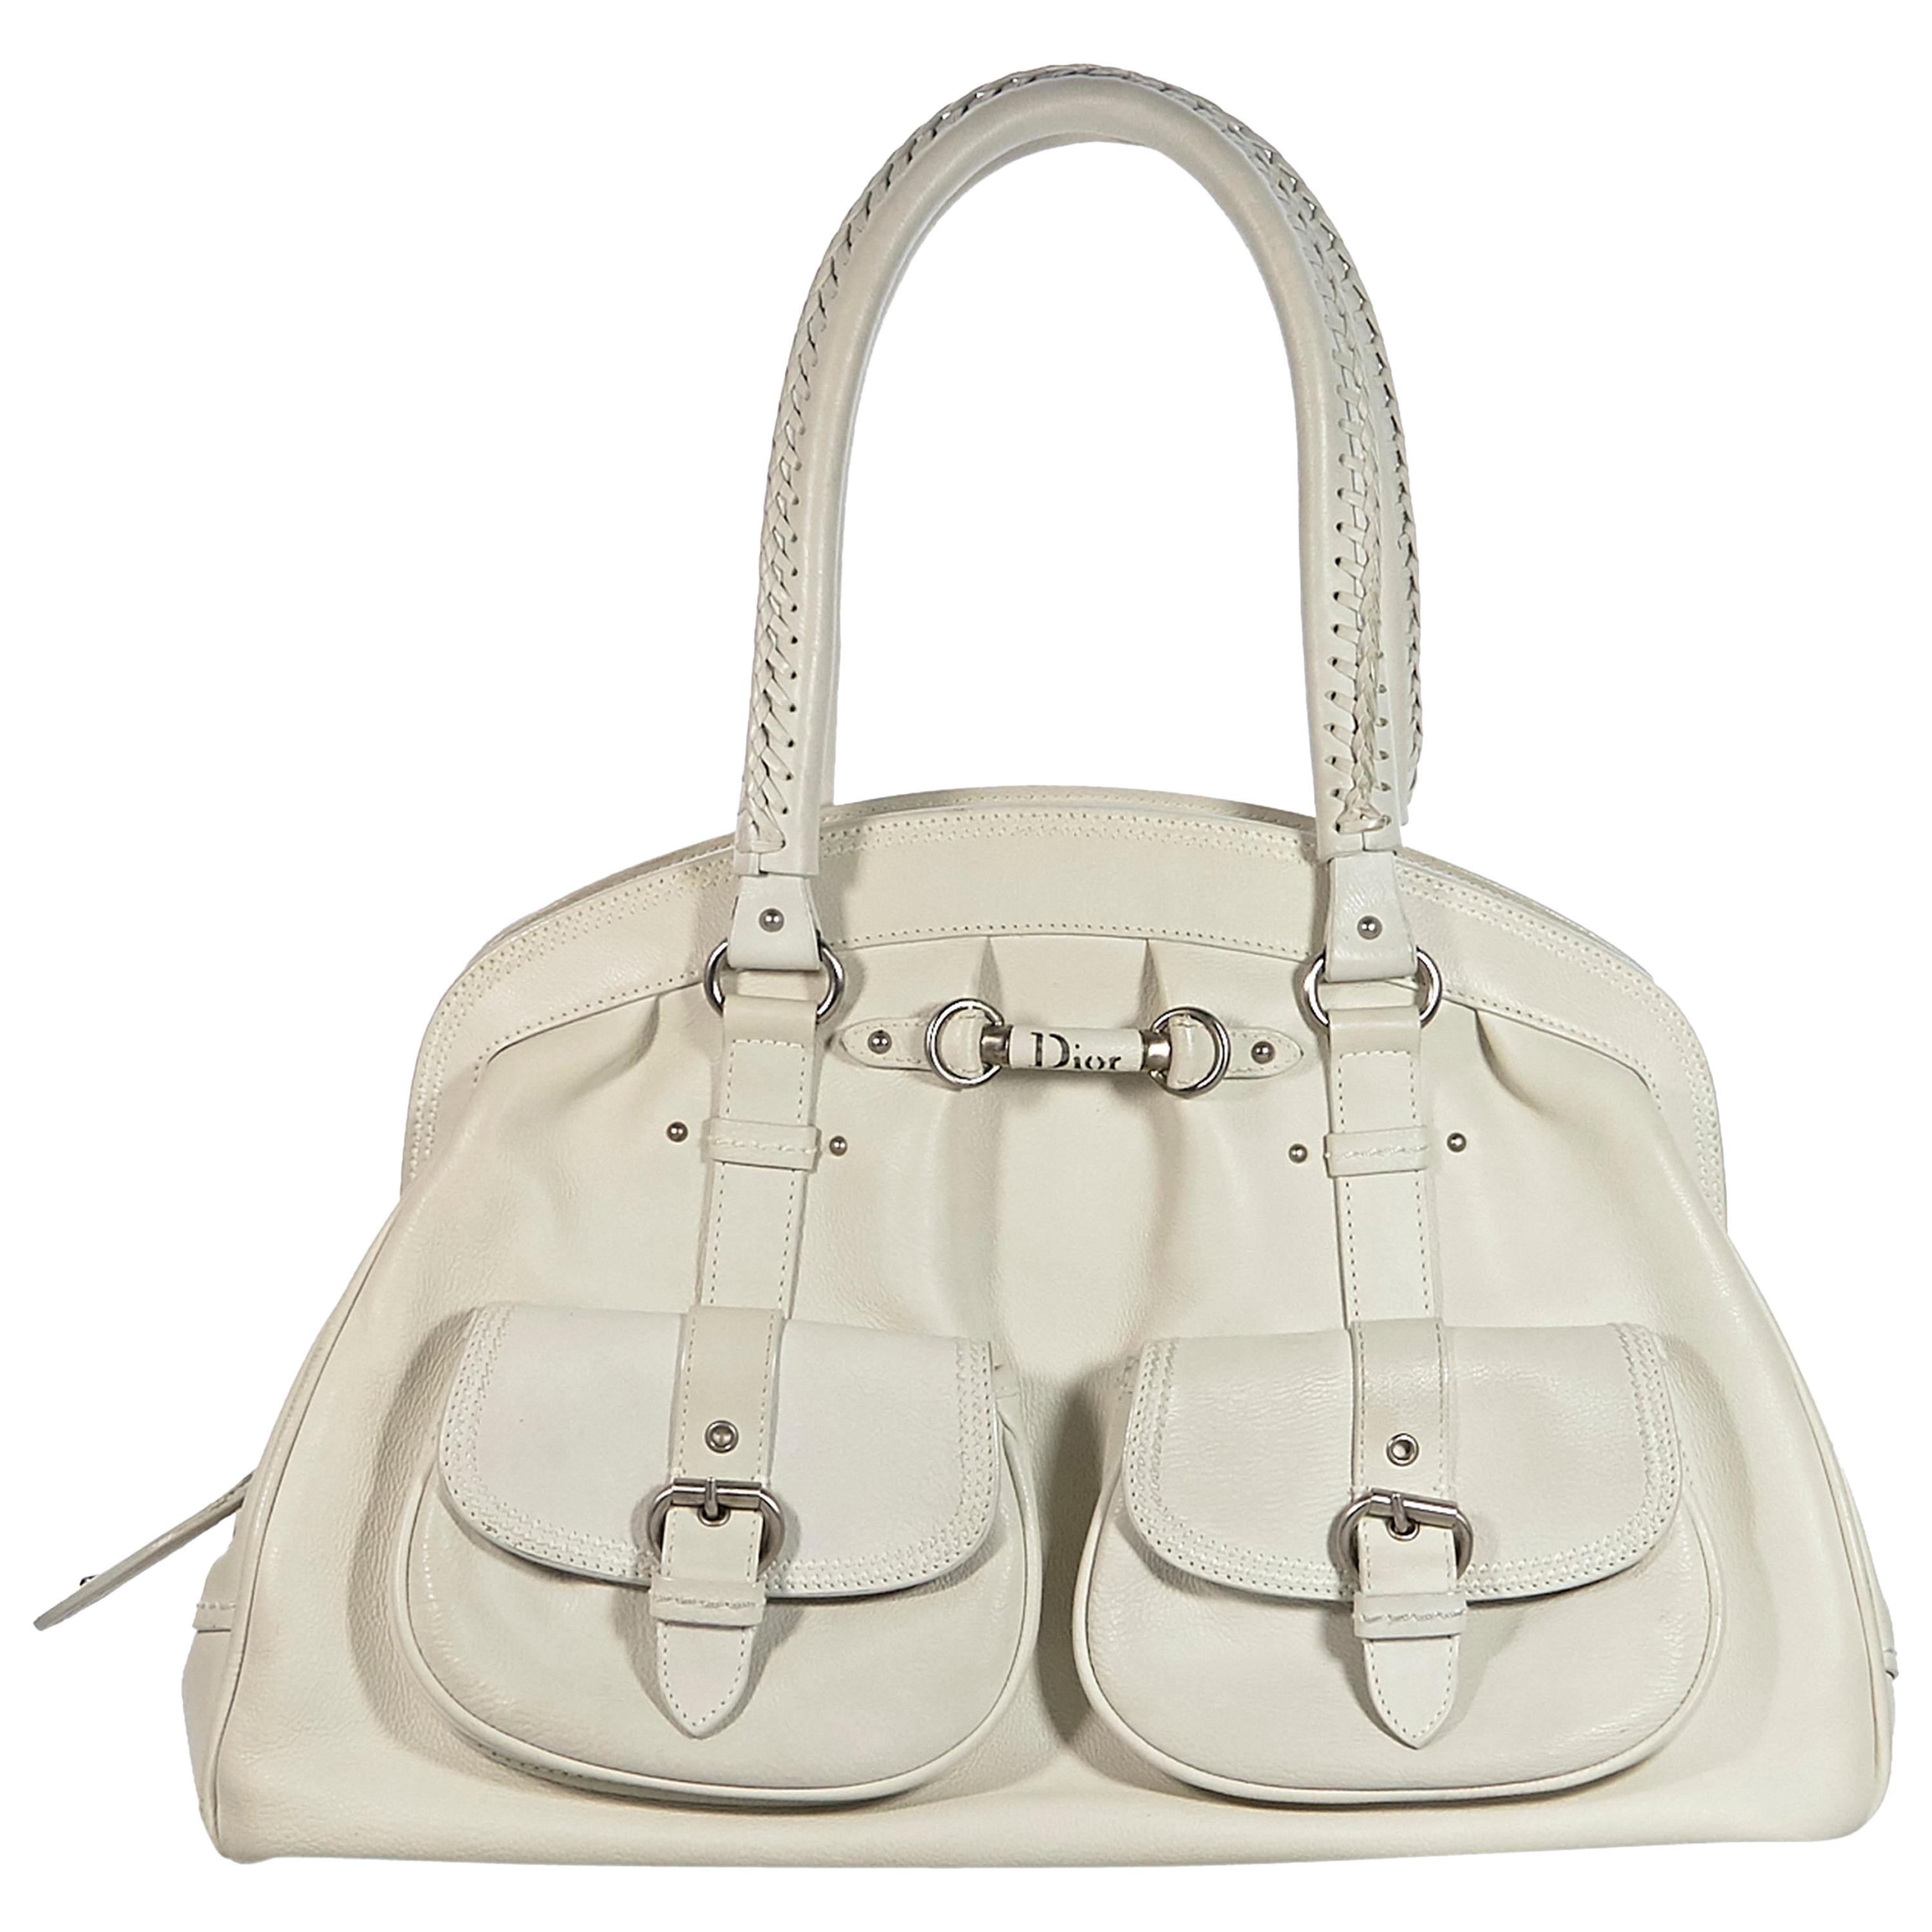 Christian Dior White Leather Hobo Bag